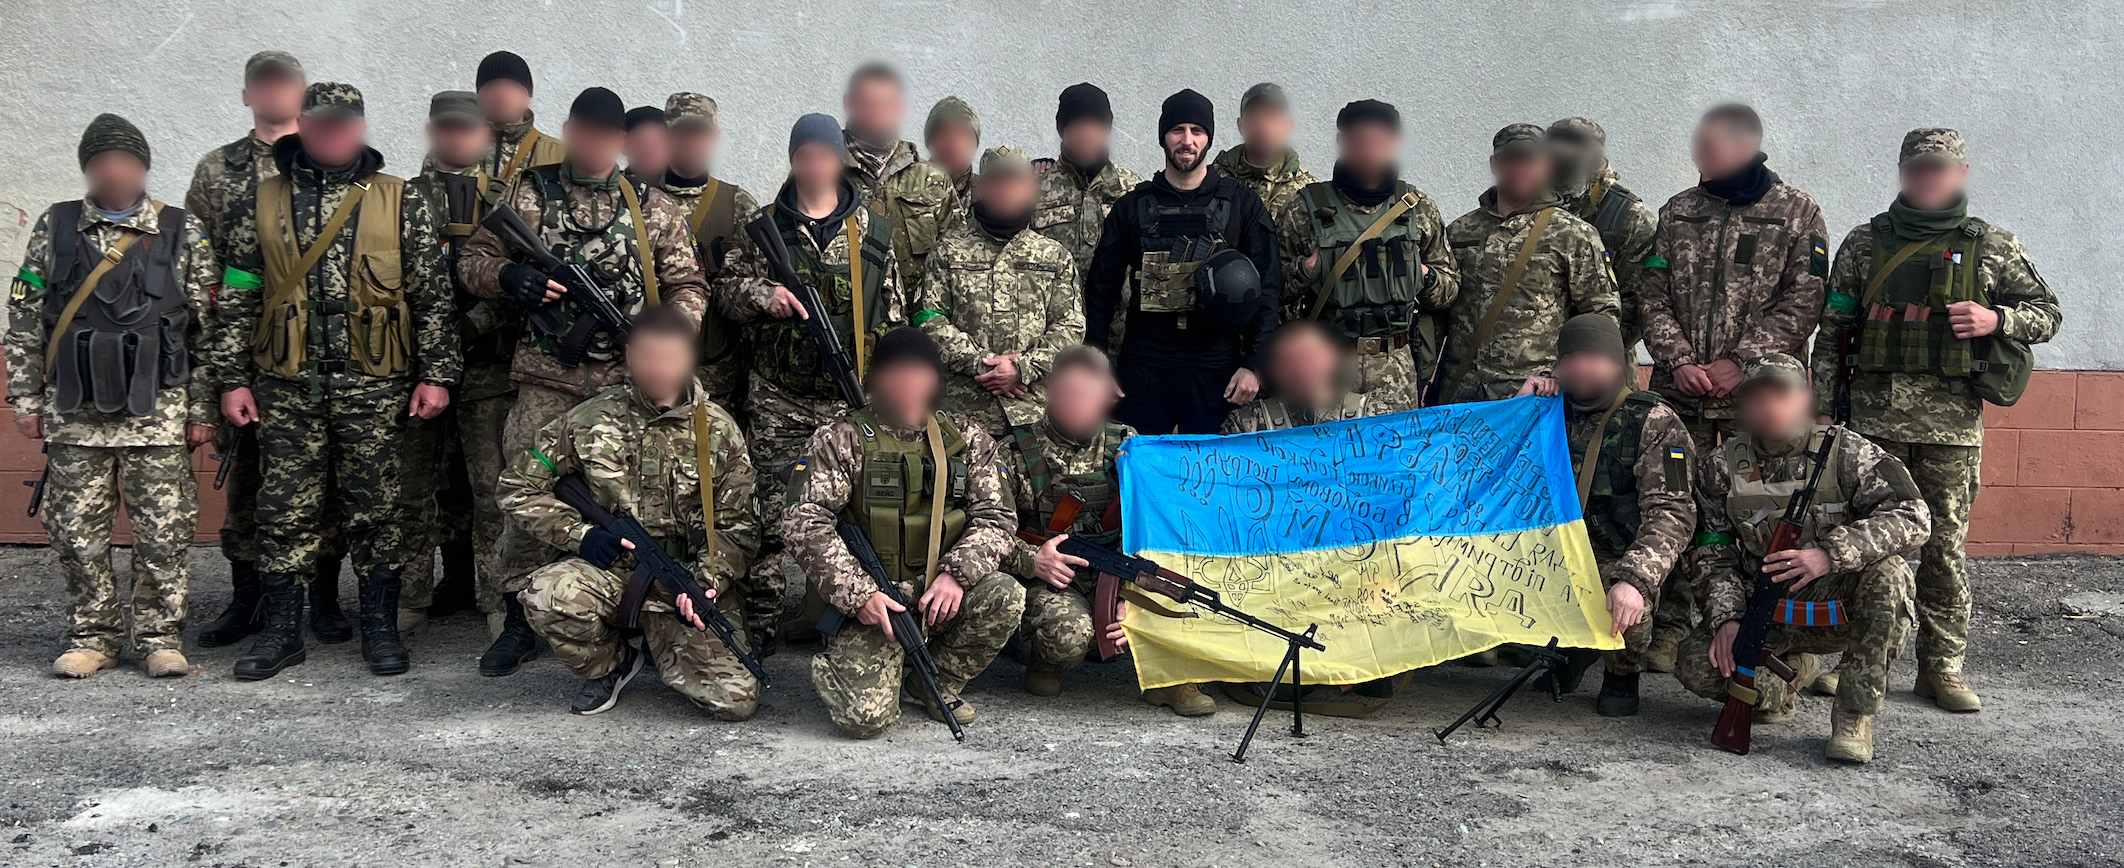 My Mission In Ukraine - Photo